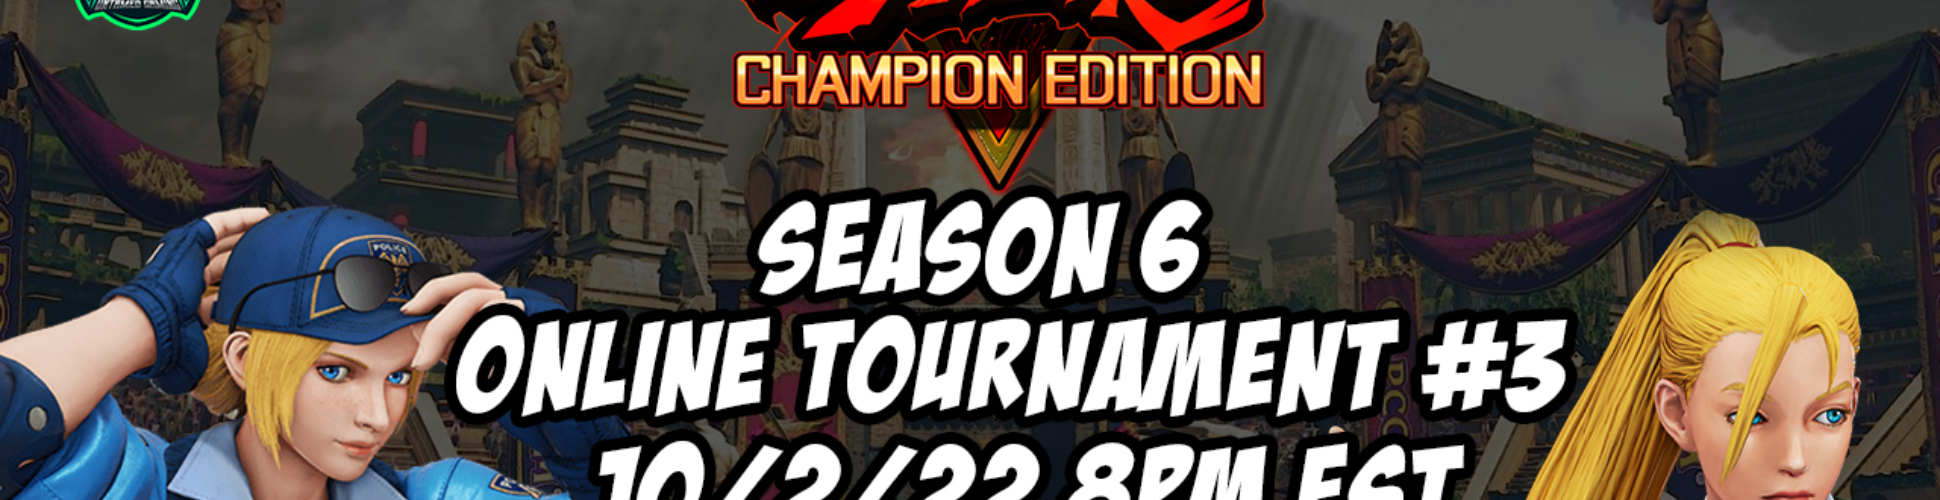 SFV CE Season 6 Online Tournament #3 10/2/22 8pm EST